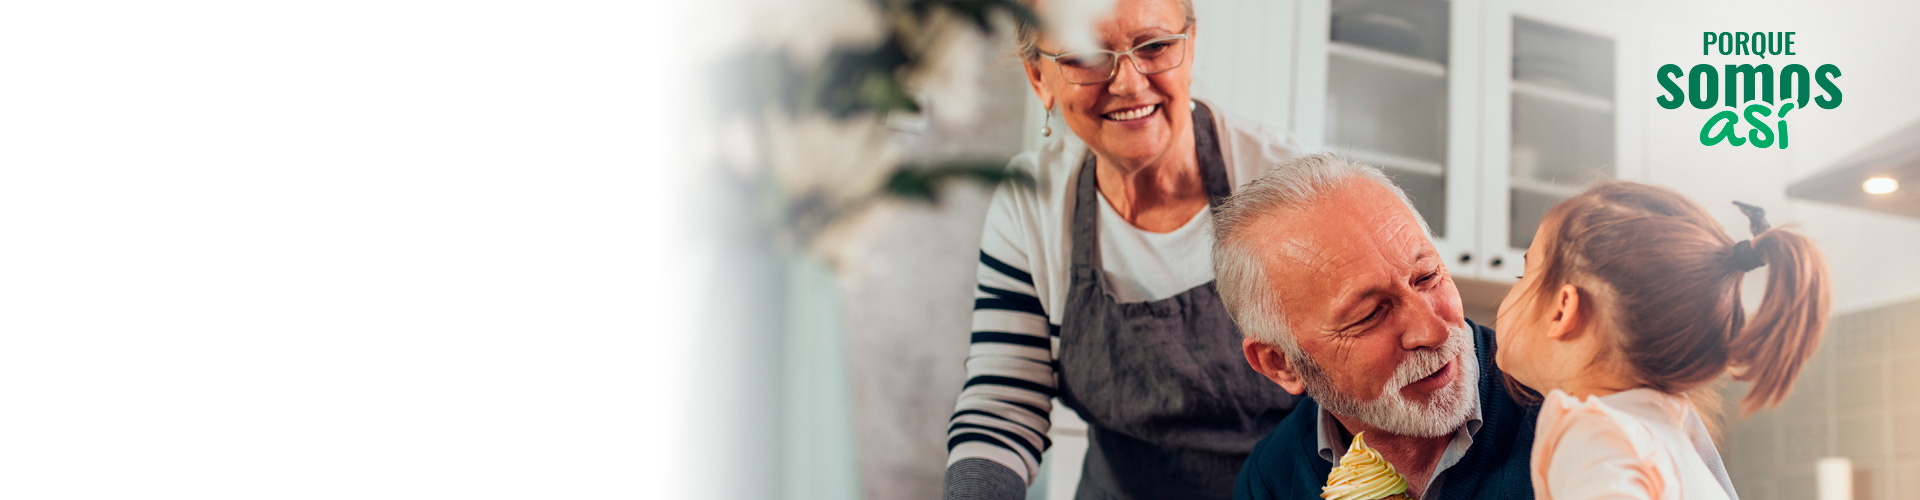 Programa Porque Somos Así Pensión - Abuelos me edad avanzada en la cocina de su casa con su nieta cocinando galletas y sonriendo